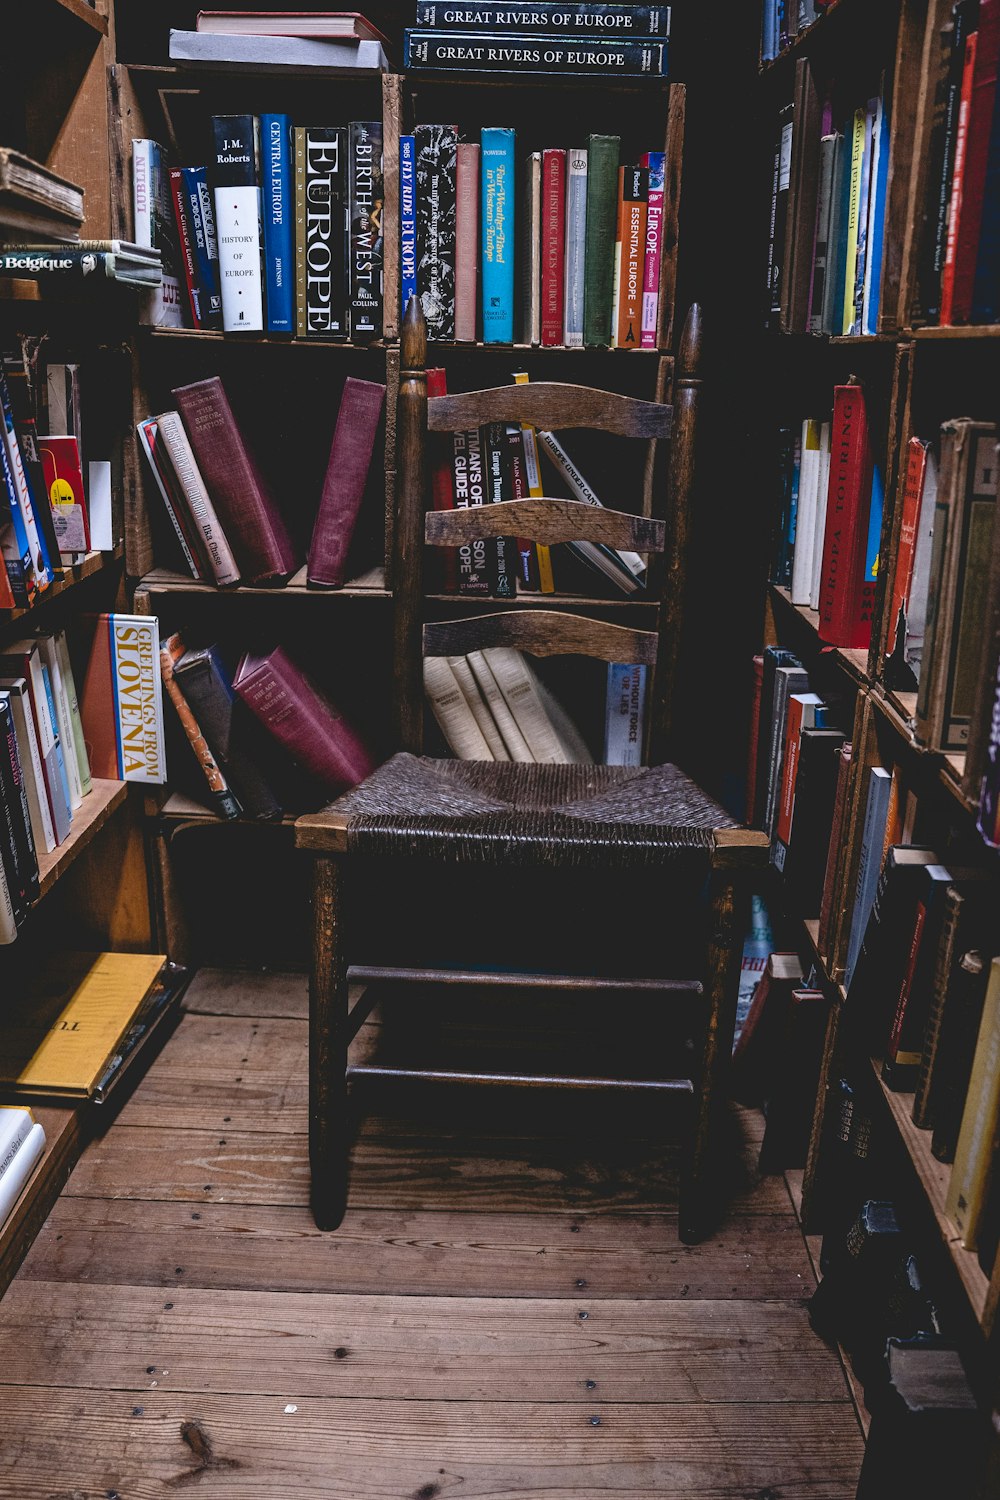 brauner Holzstuhl in der Nähe von Büchern